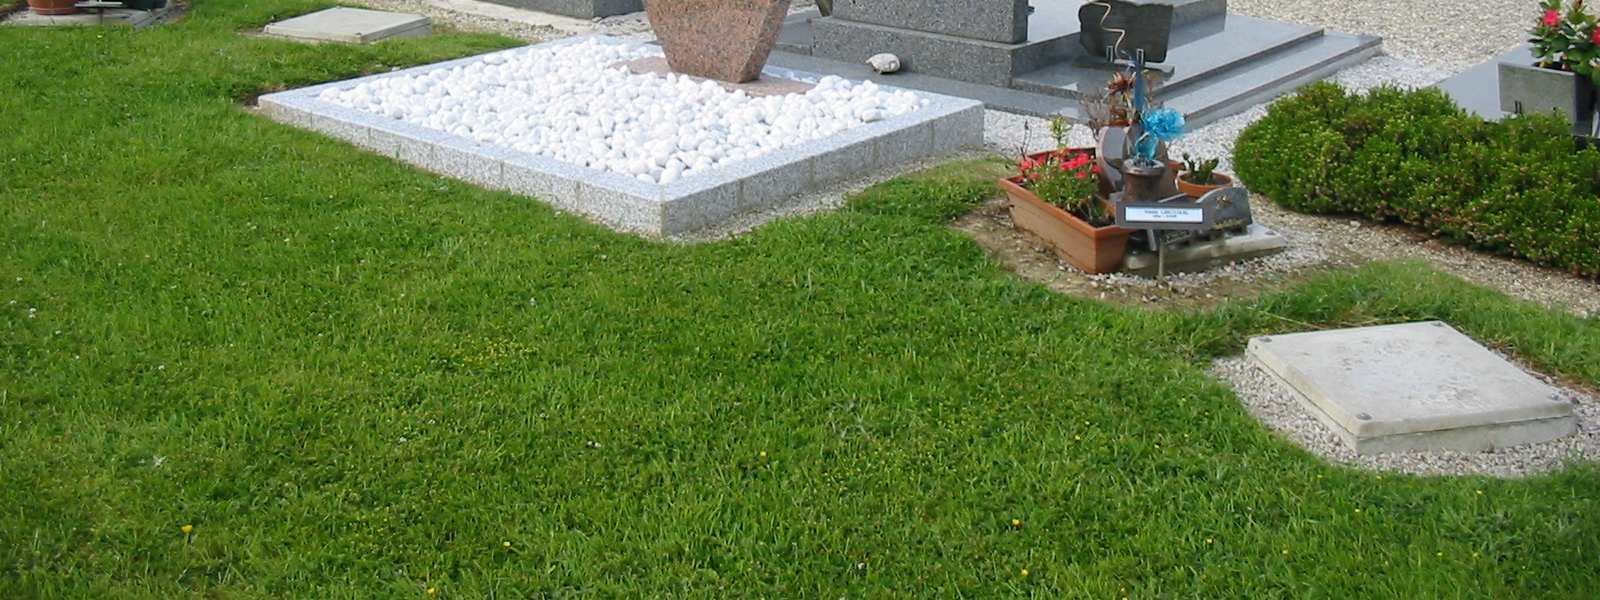 Le cimetière de Canisy est récent. Il ne subsiste rien de l ancien lieu de sépulture.